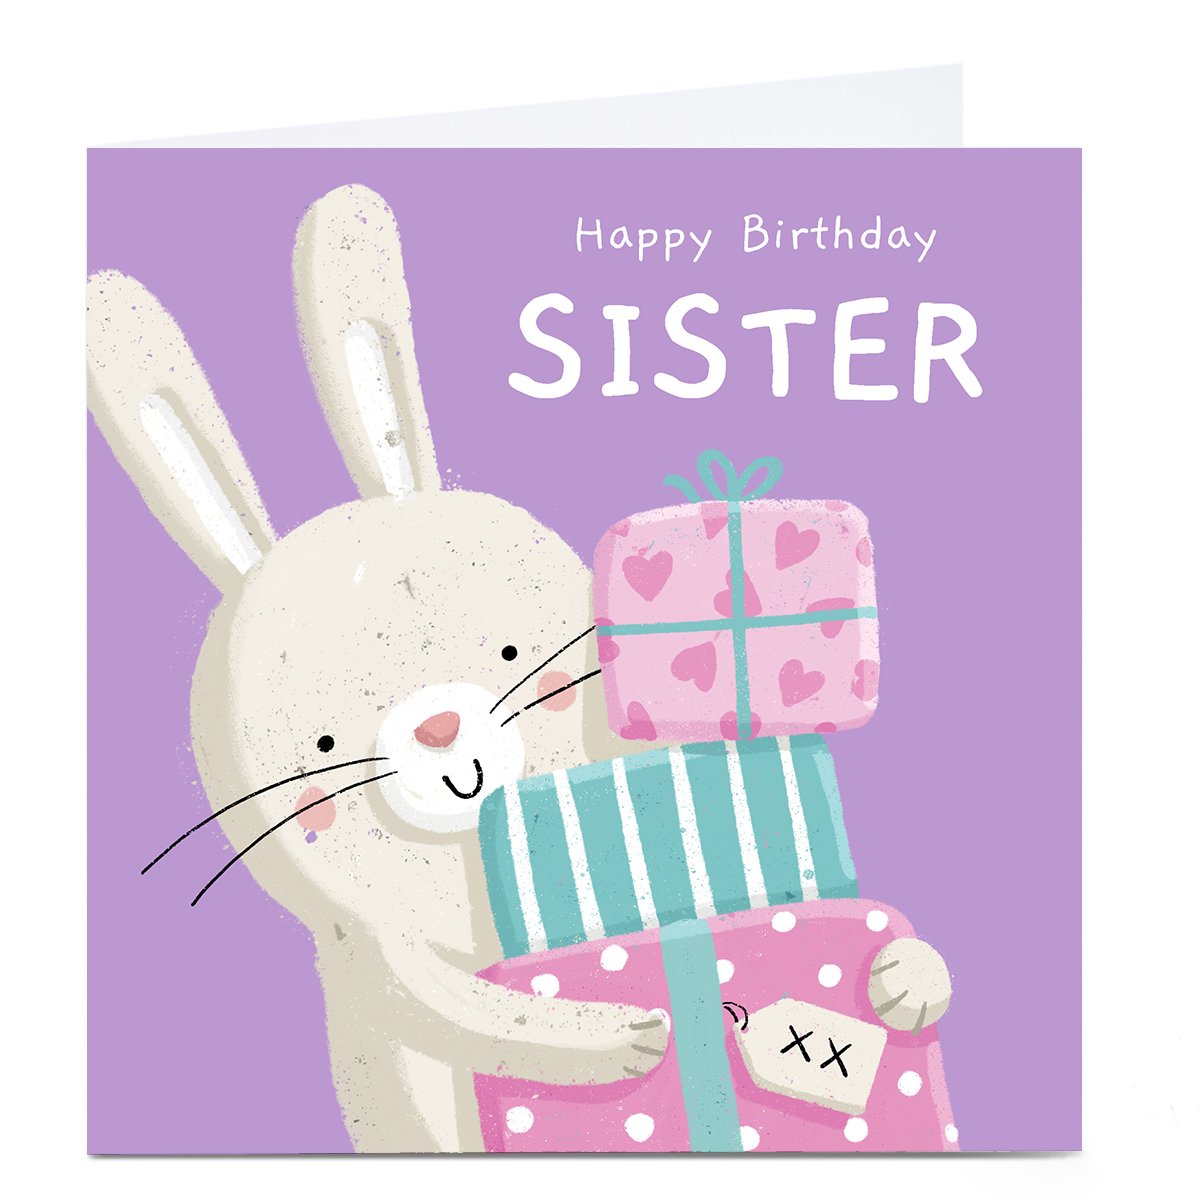 Personalised Dumpling Green Birthday Card - Sister